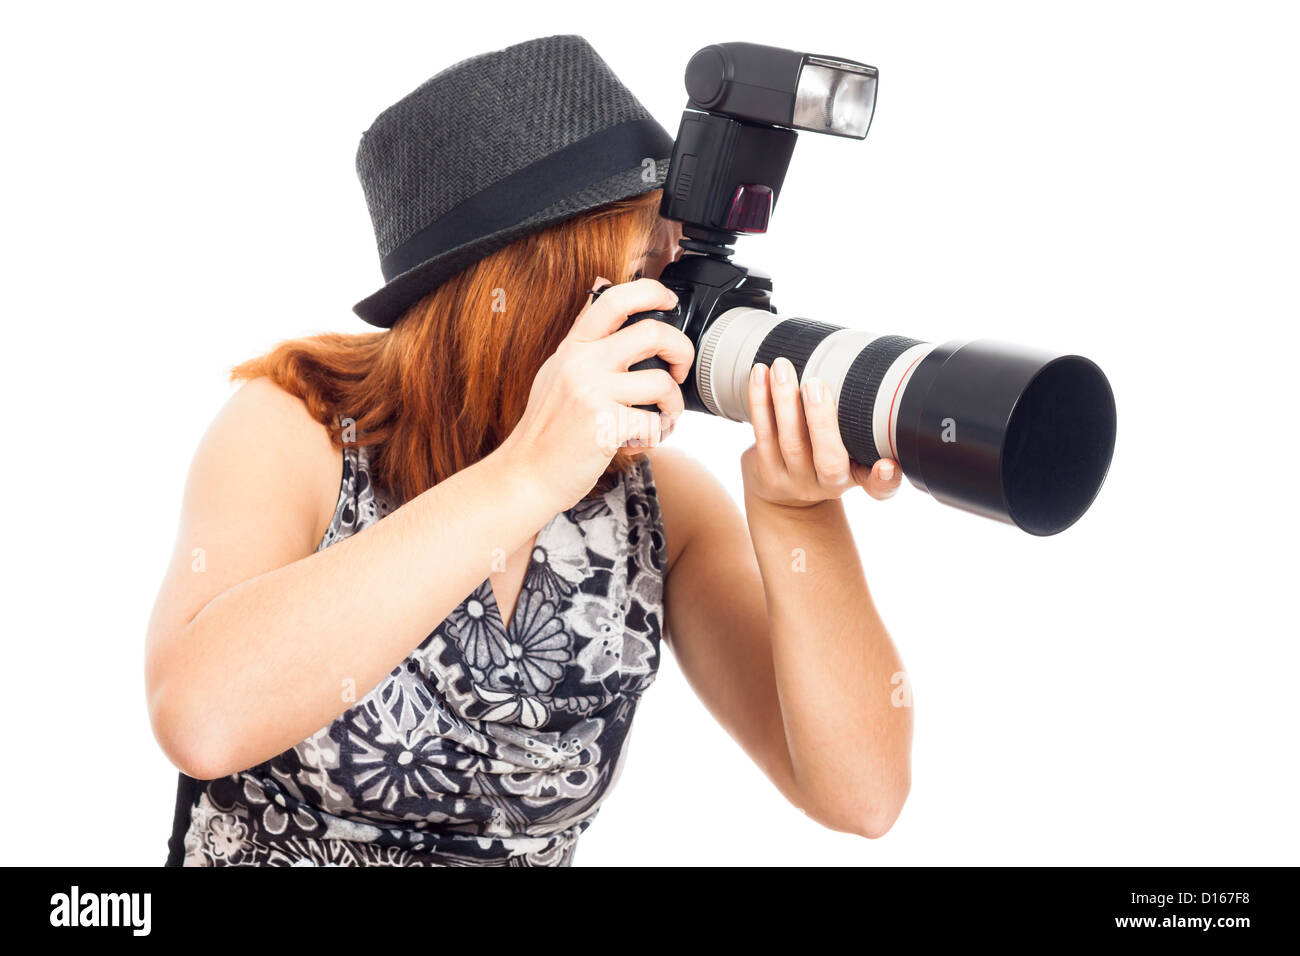 Jeune femme photographe avec appareil photo professionnel, isolé sur fond blanc. Banque D'Images